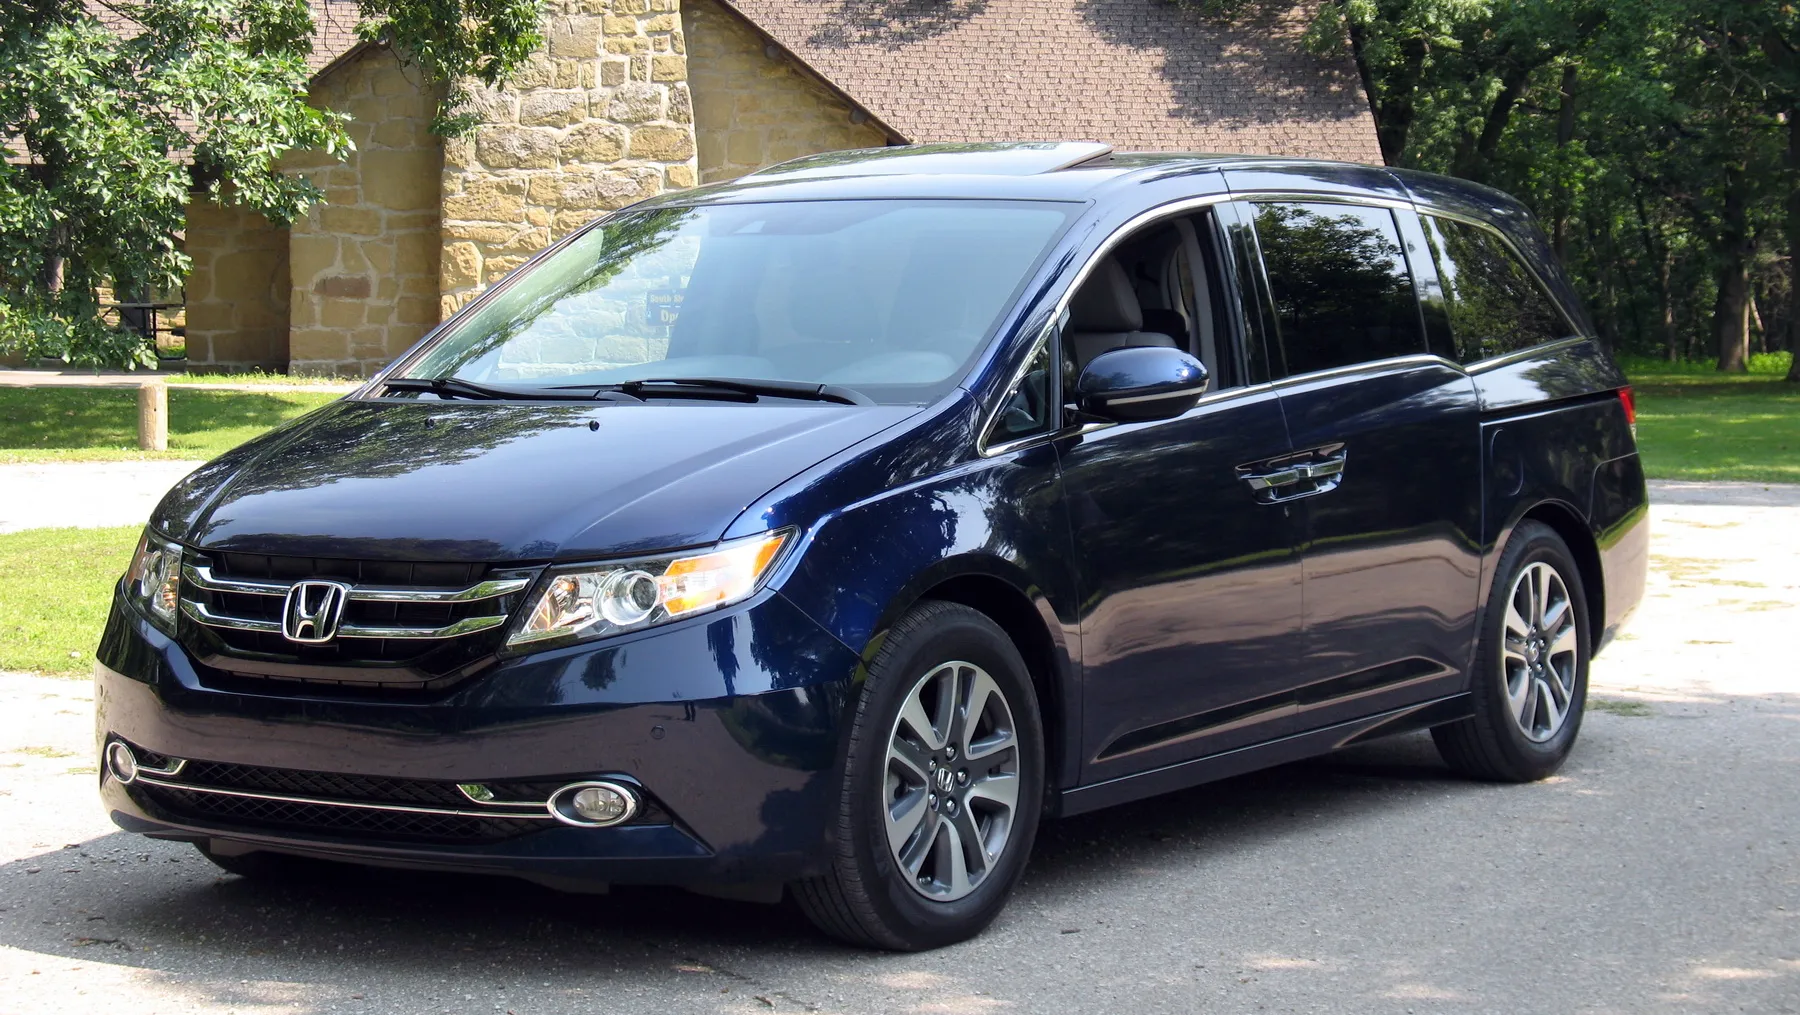 Honda Odyssey 2014